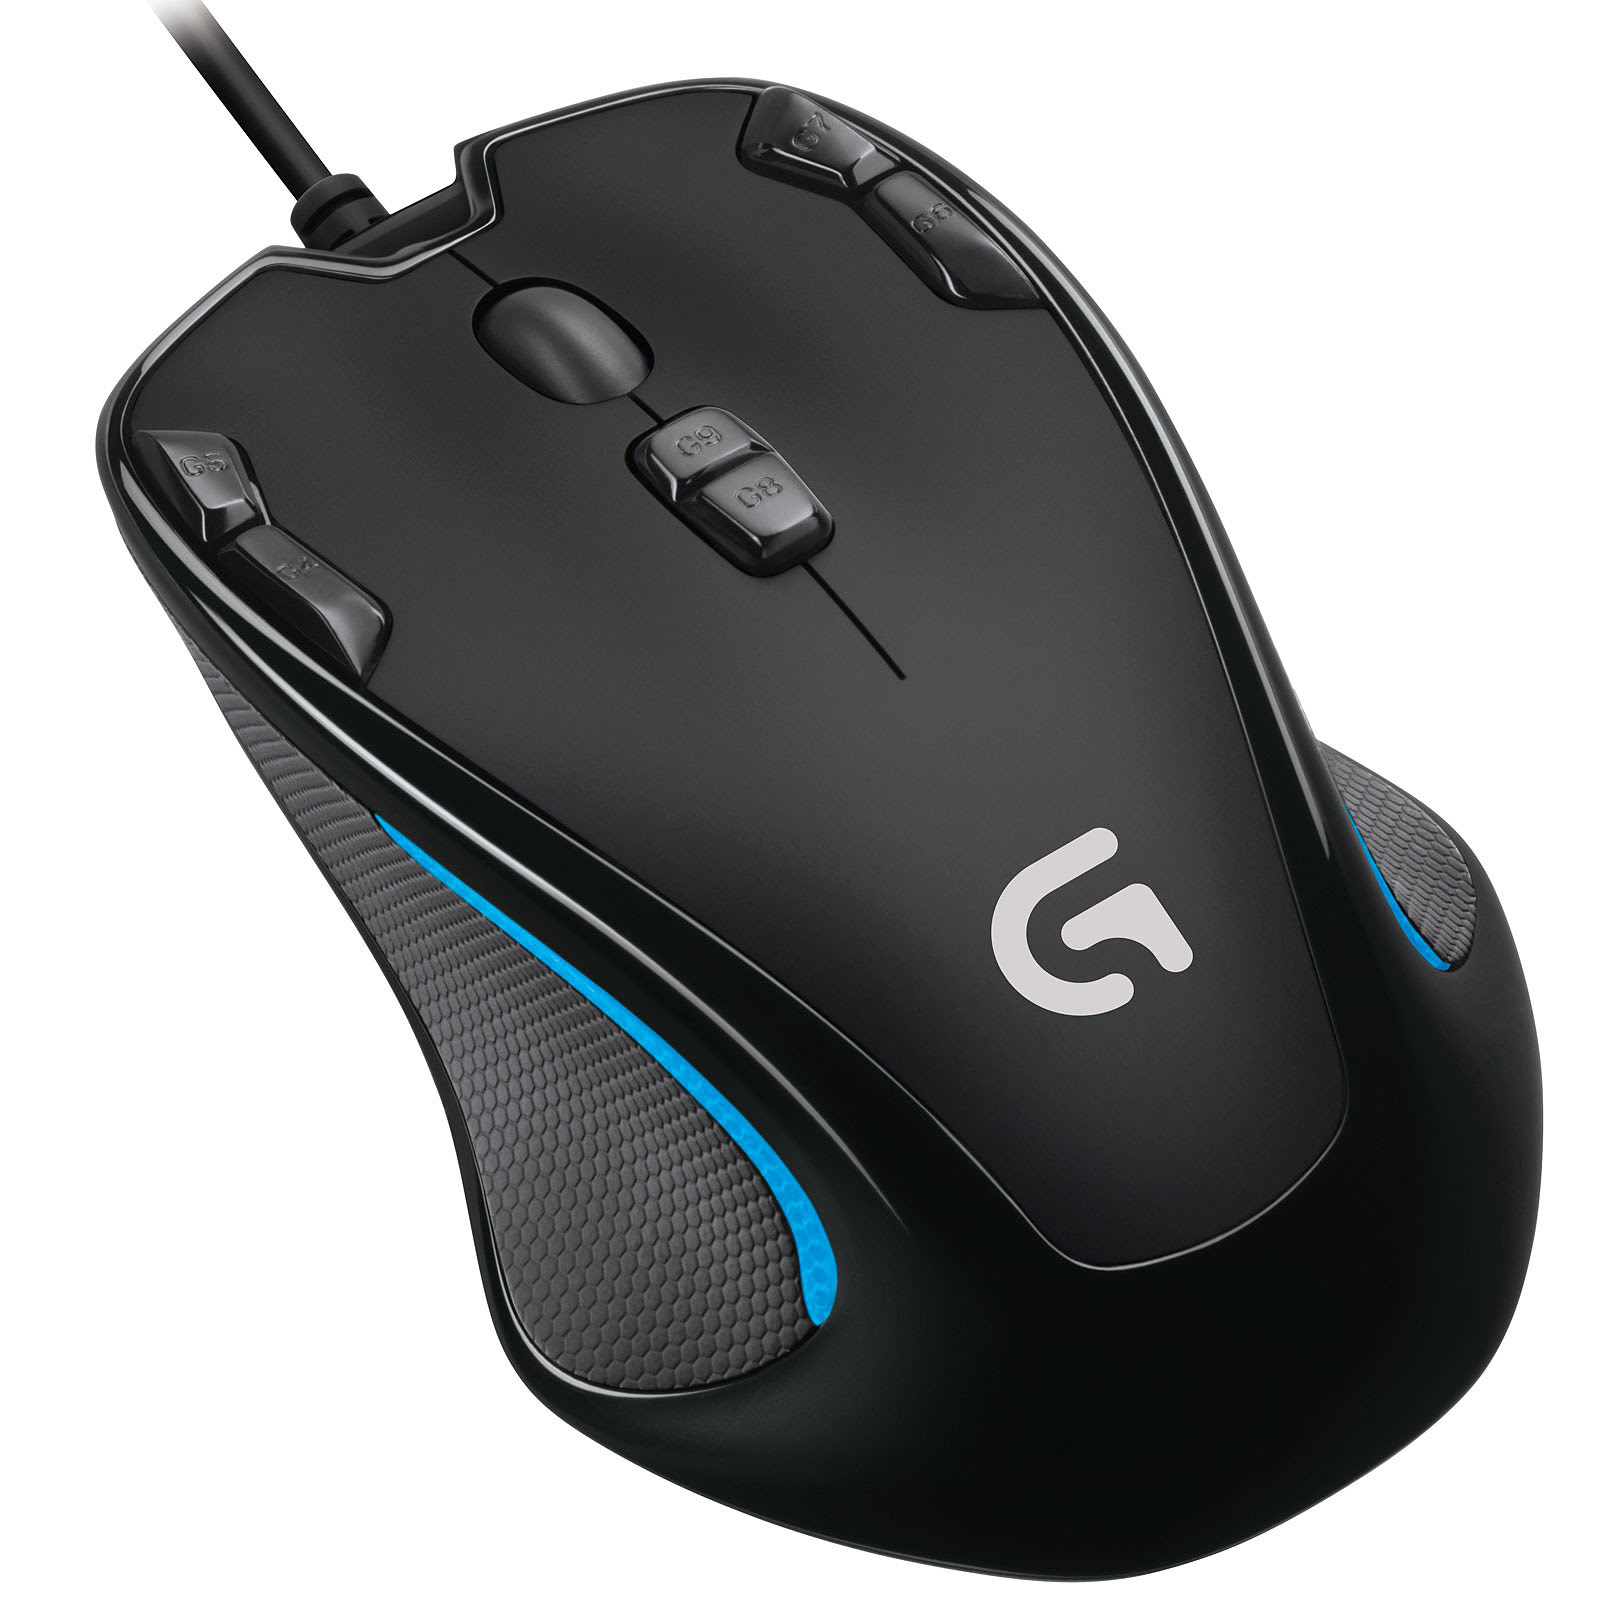  G300s Gaming Mouse (910-004346 **) - Achat / Vente Souris PC sur Picata.fr - 1